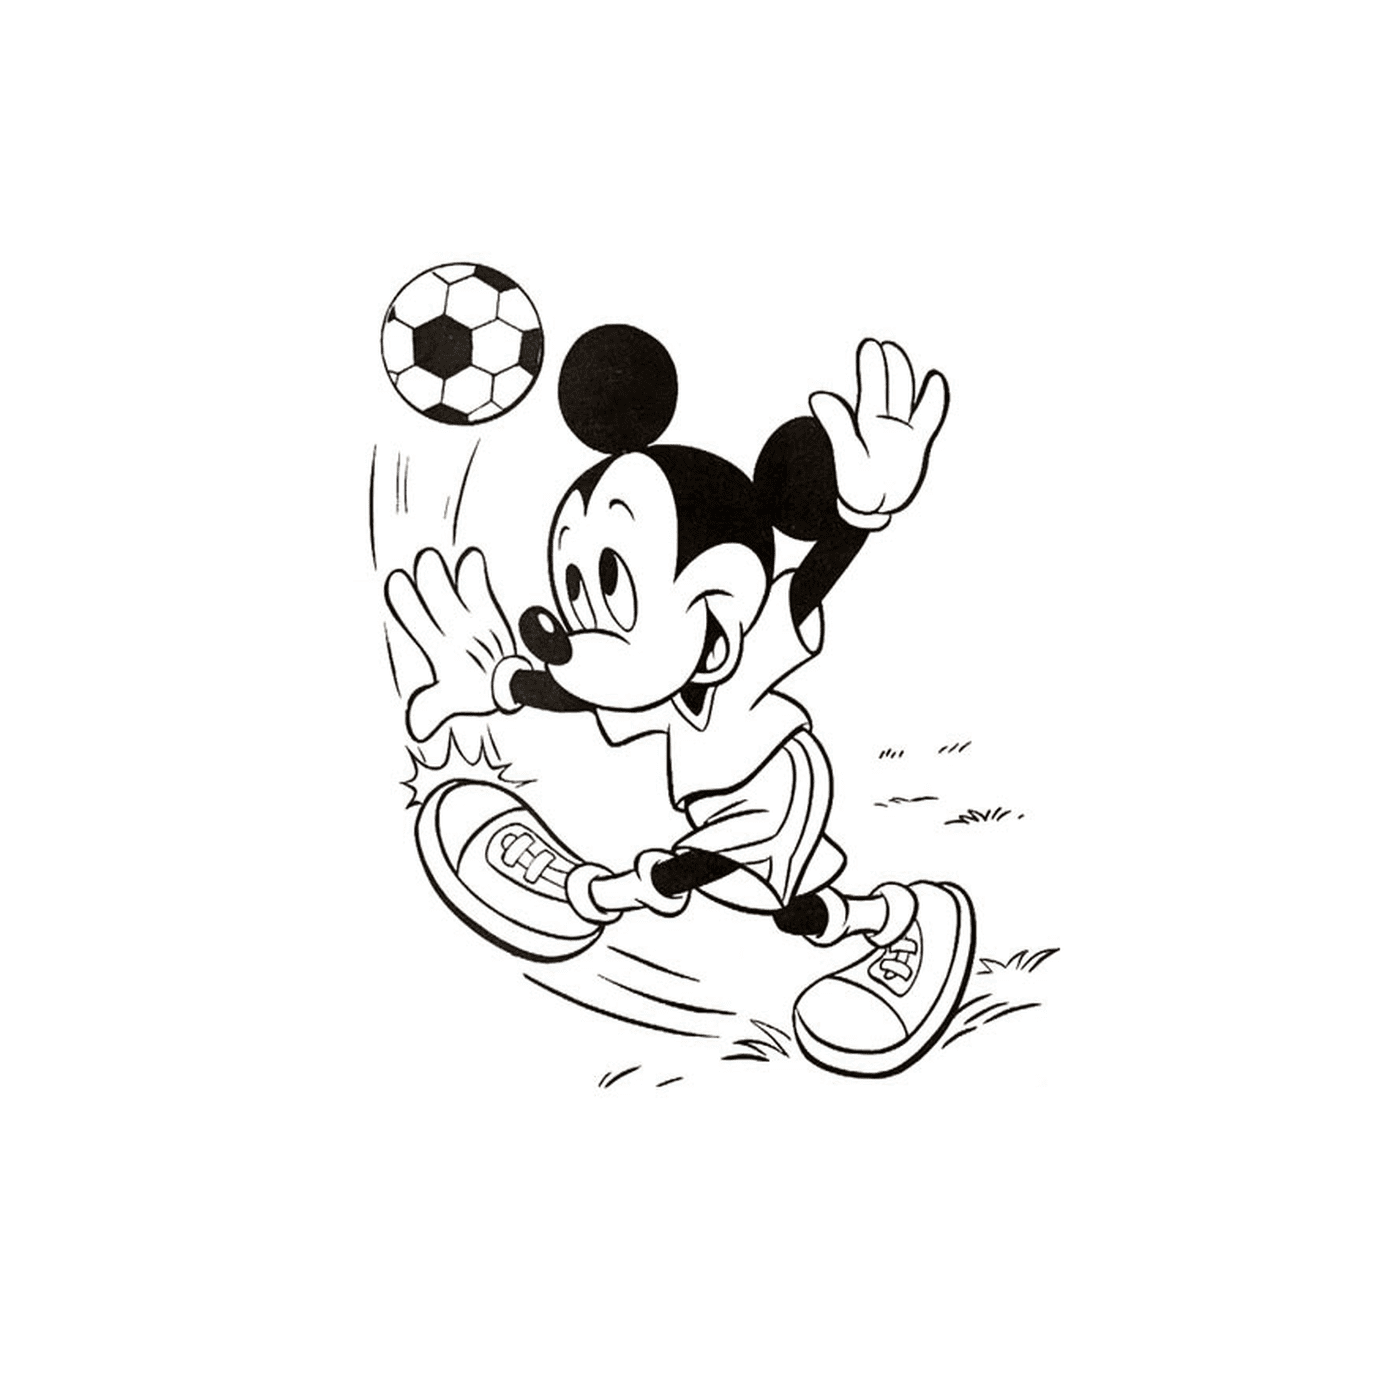  Mickey spielt Fußball 